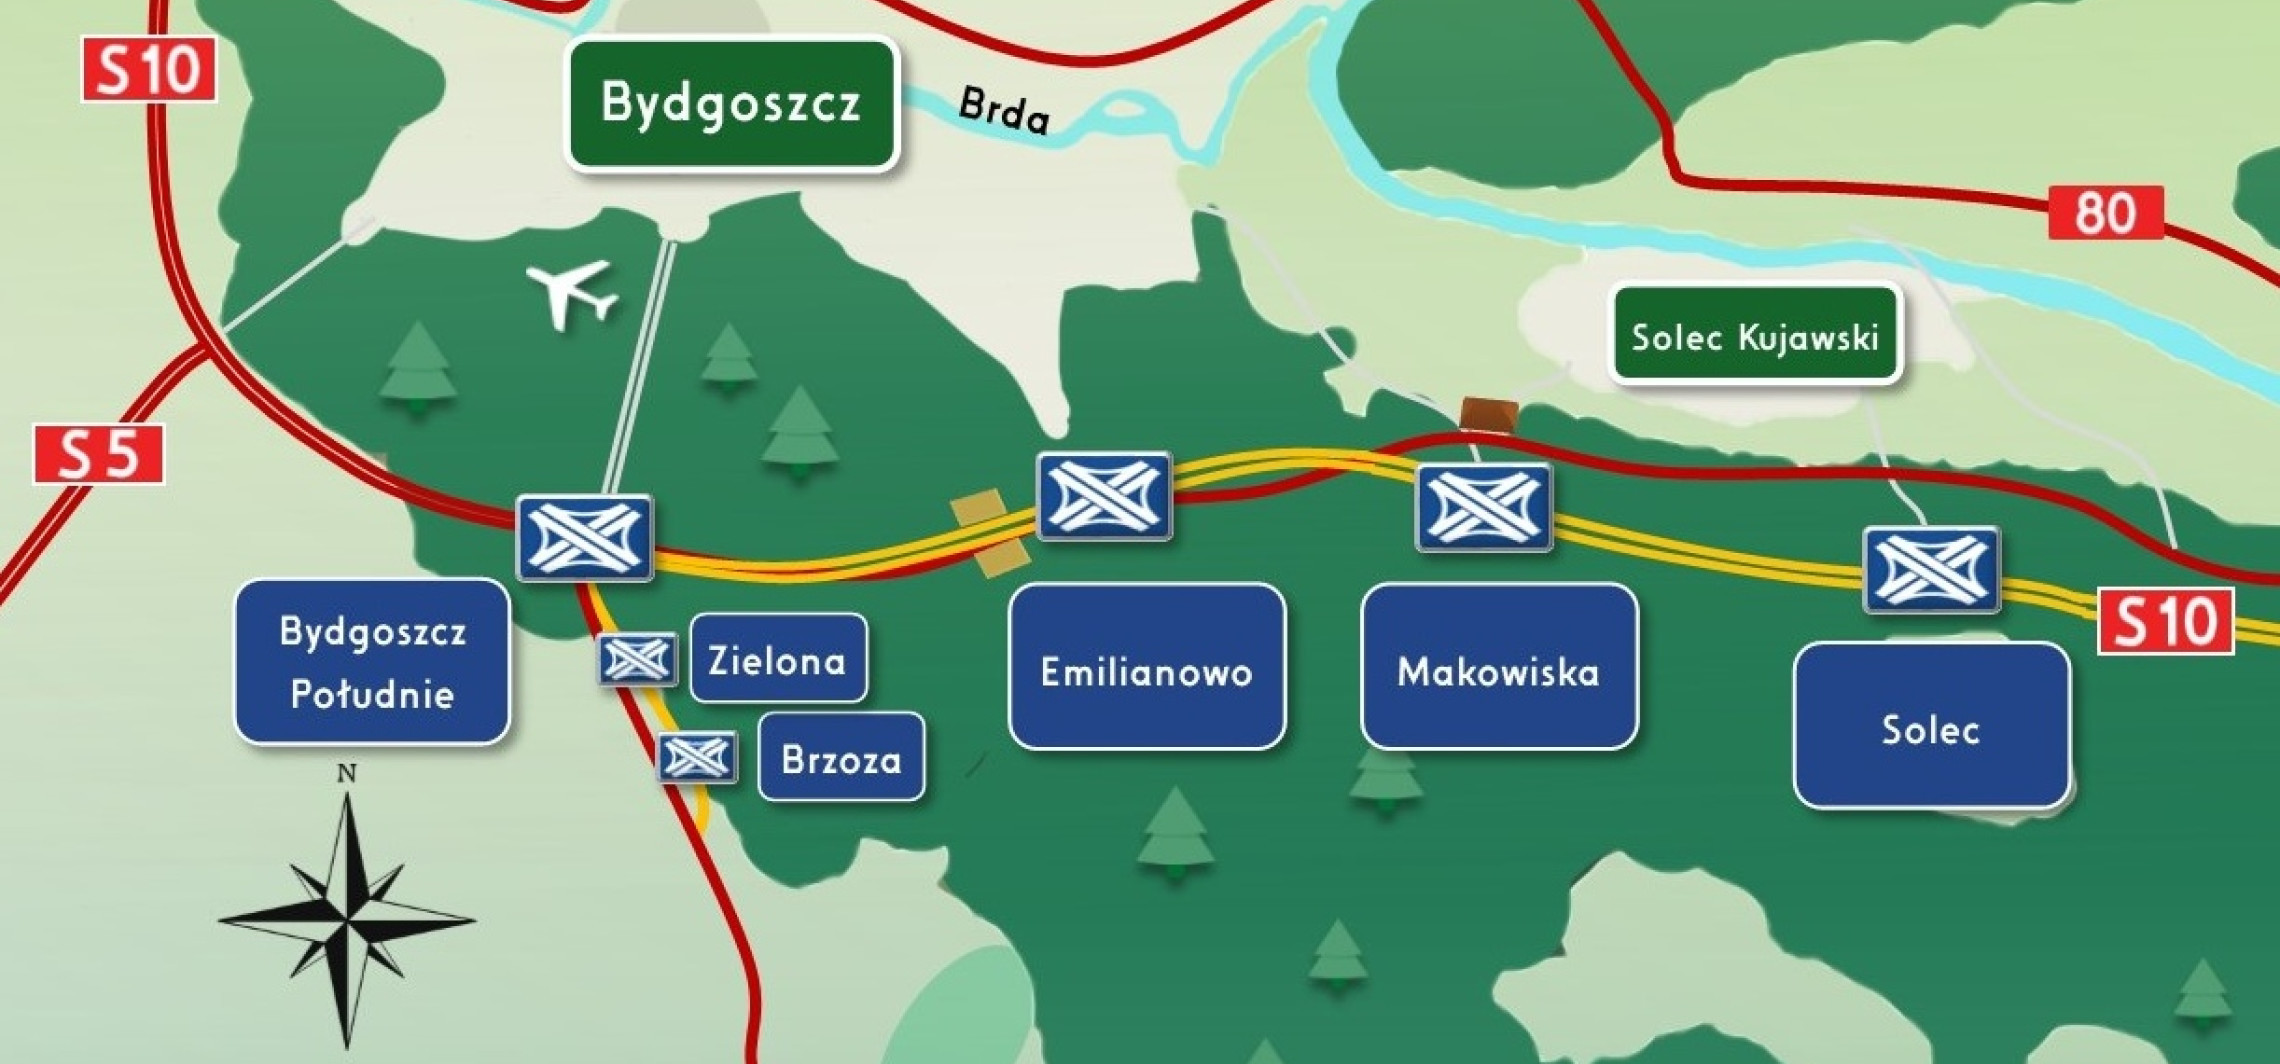 Inowrocław - Za kilka lat szybciej dojedziemy do Bydgoszczy